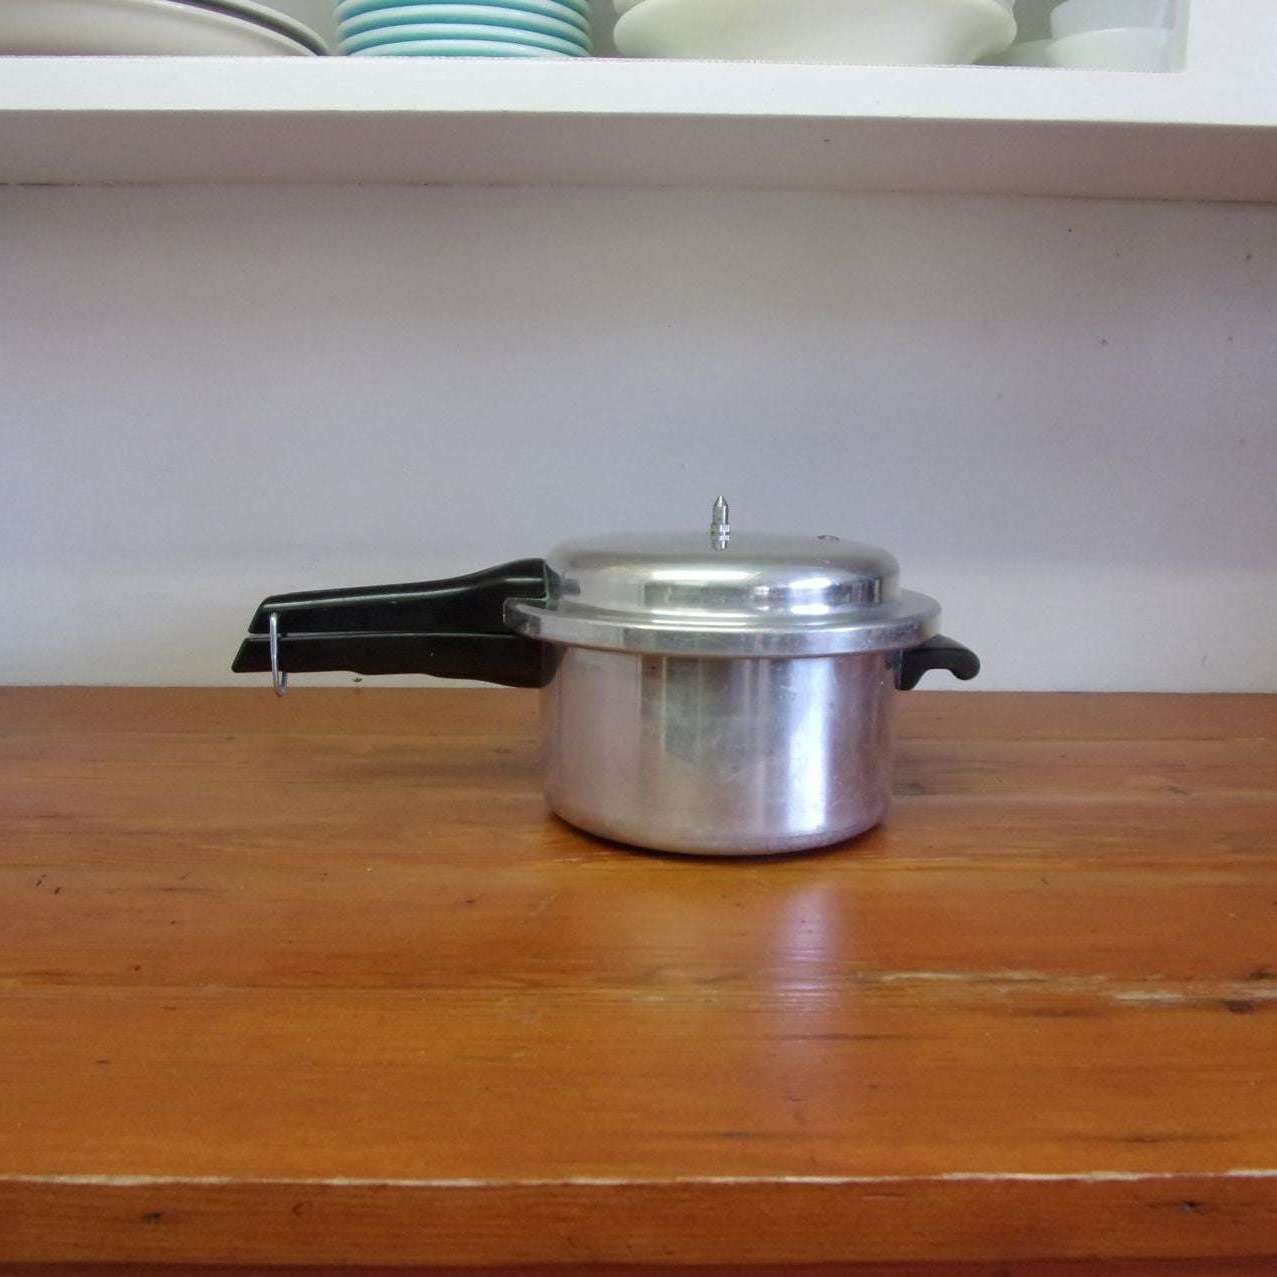 https://maandpasattic.com/cdn/shop/products/vintage-mirro-matic-pressure-cooker-4-quart-aluminum-cookware-ma-and-pas-attic-31938830_1024x1024@2x.jpg?v=1675460090